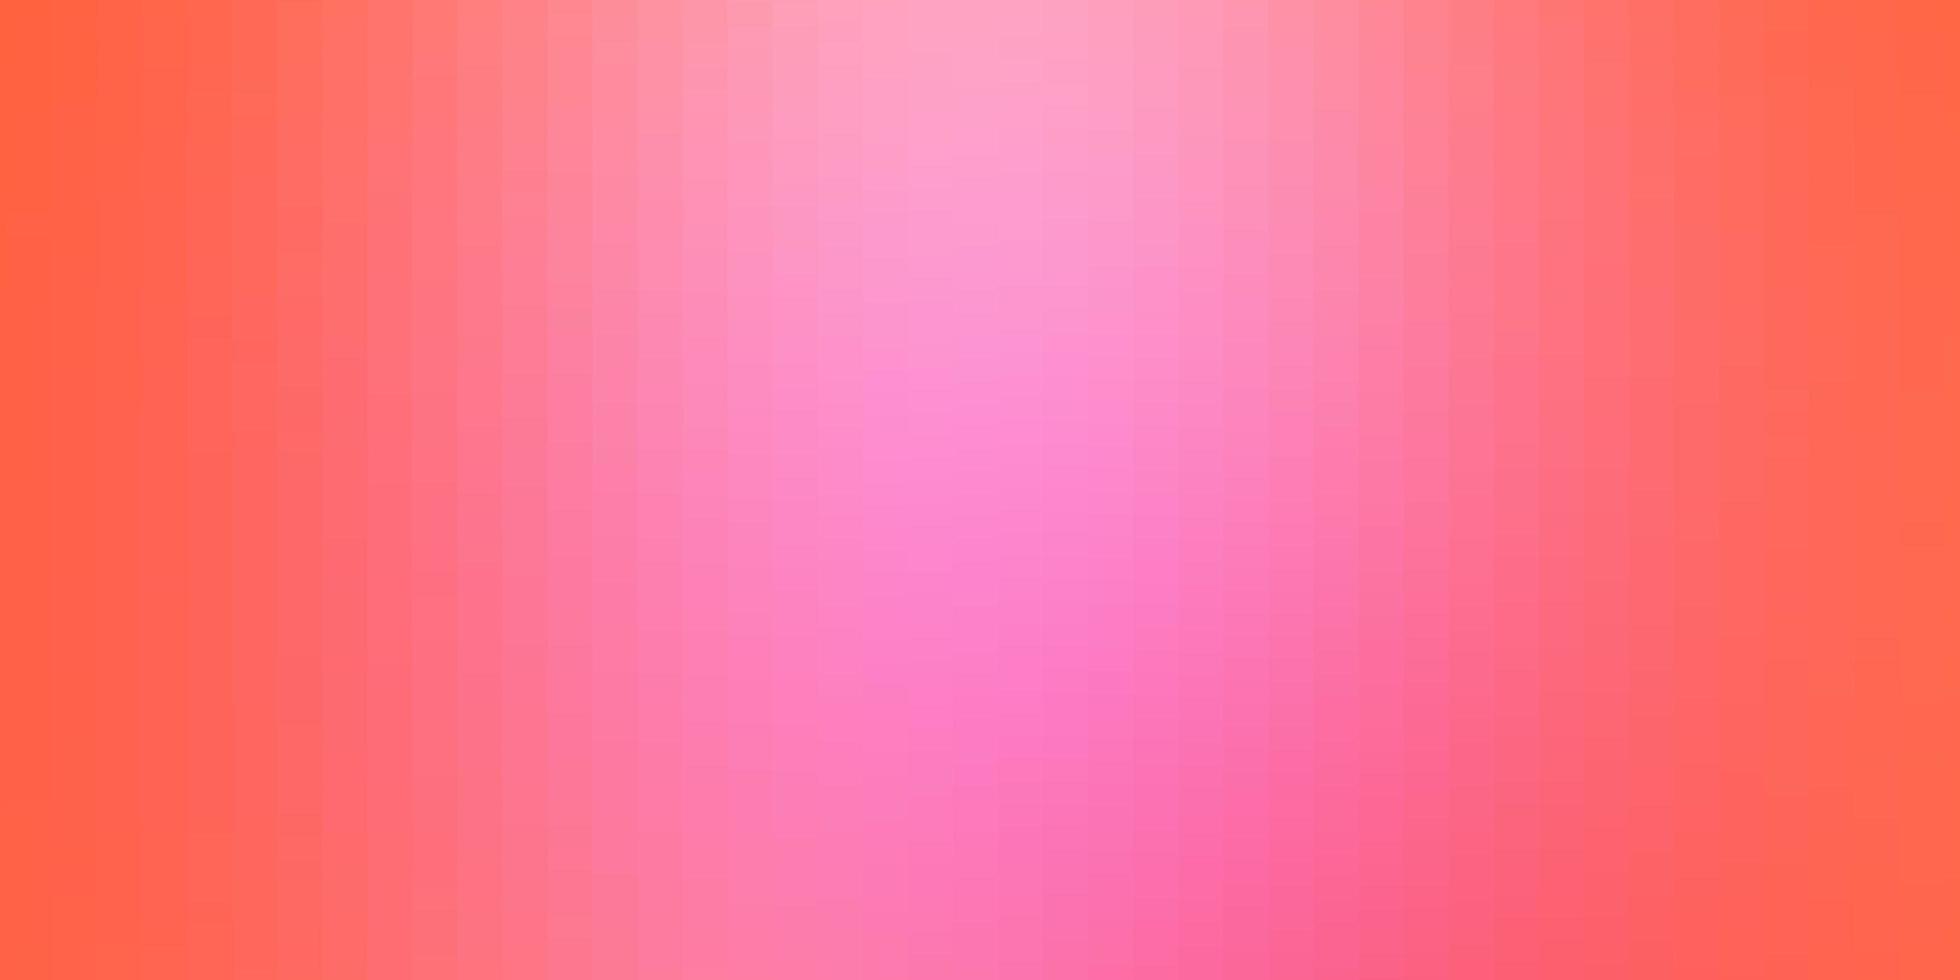 plantilla de vector rosa claro con rectángulos.